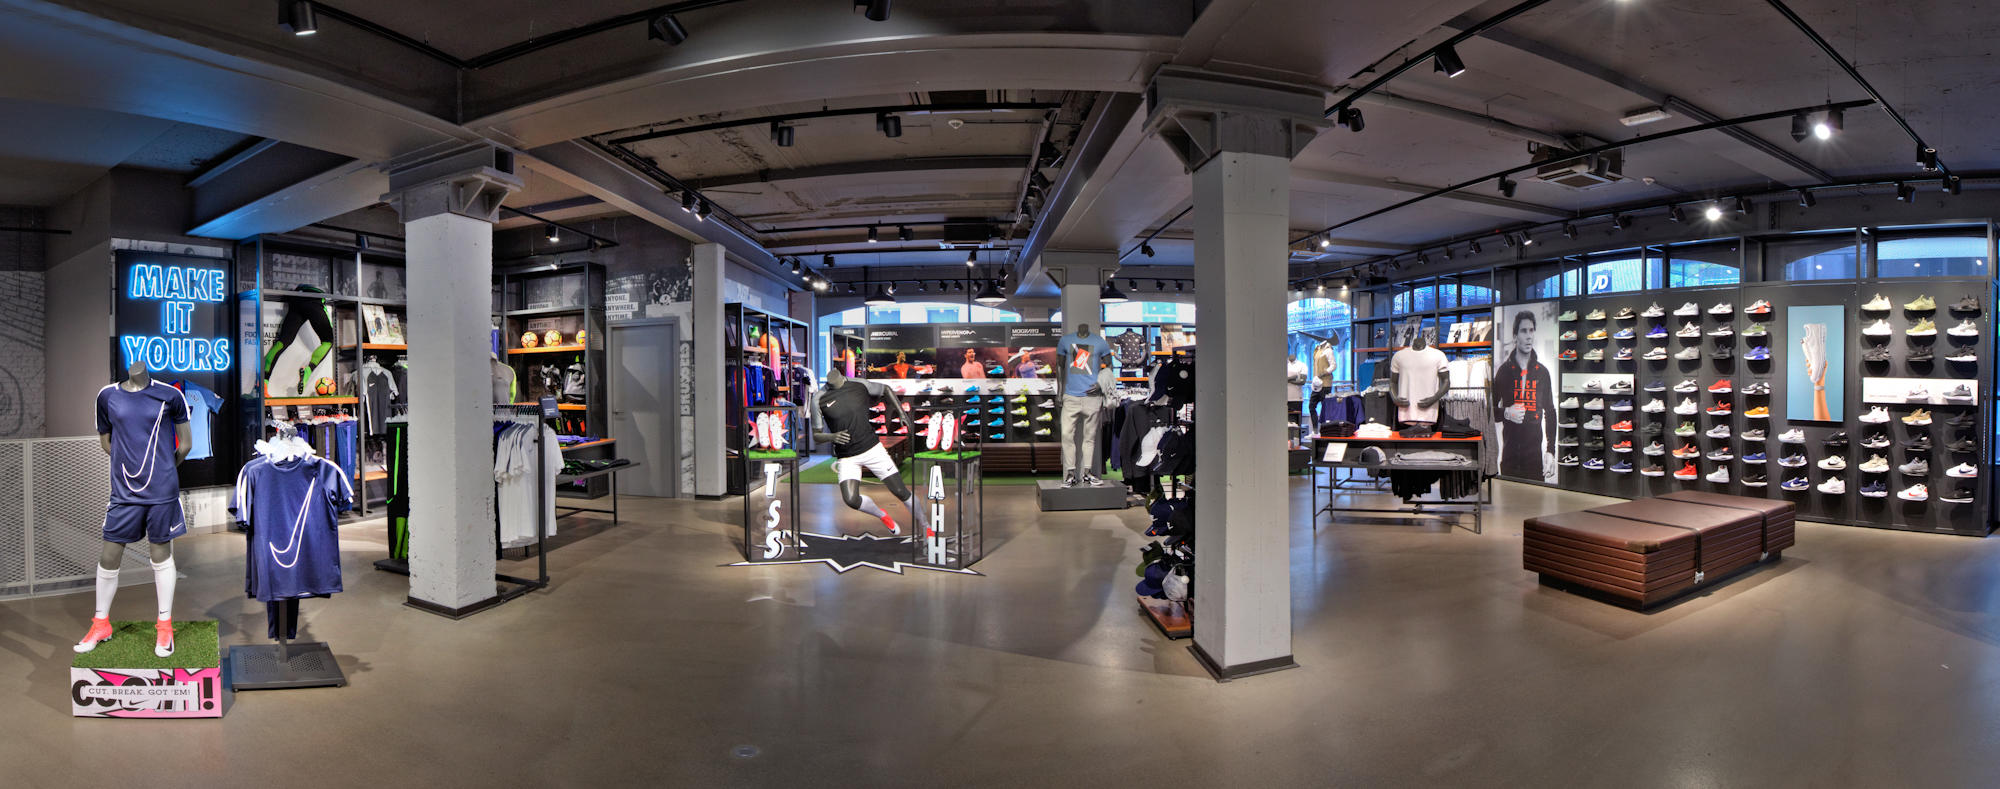 Nike Brussels - Sports Et Loisirs: Articles Et Vêtements (Détail Et Accessoires) à Brussel (adresse, horaires, TÉL: 022179...) - Infobel